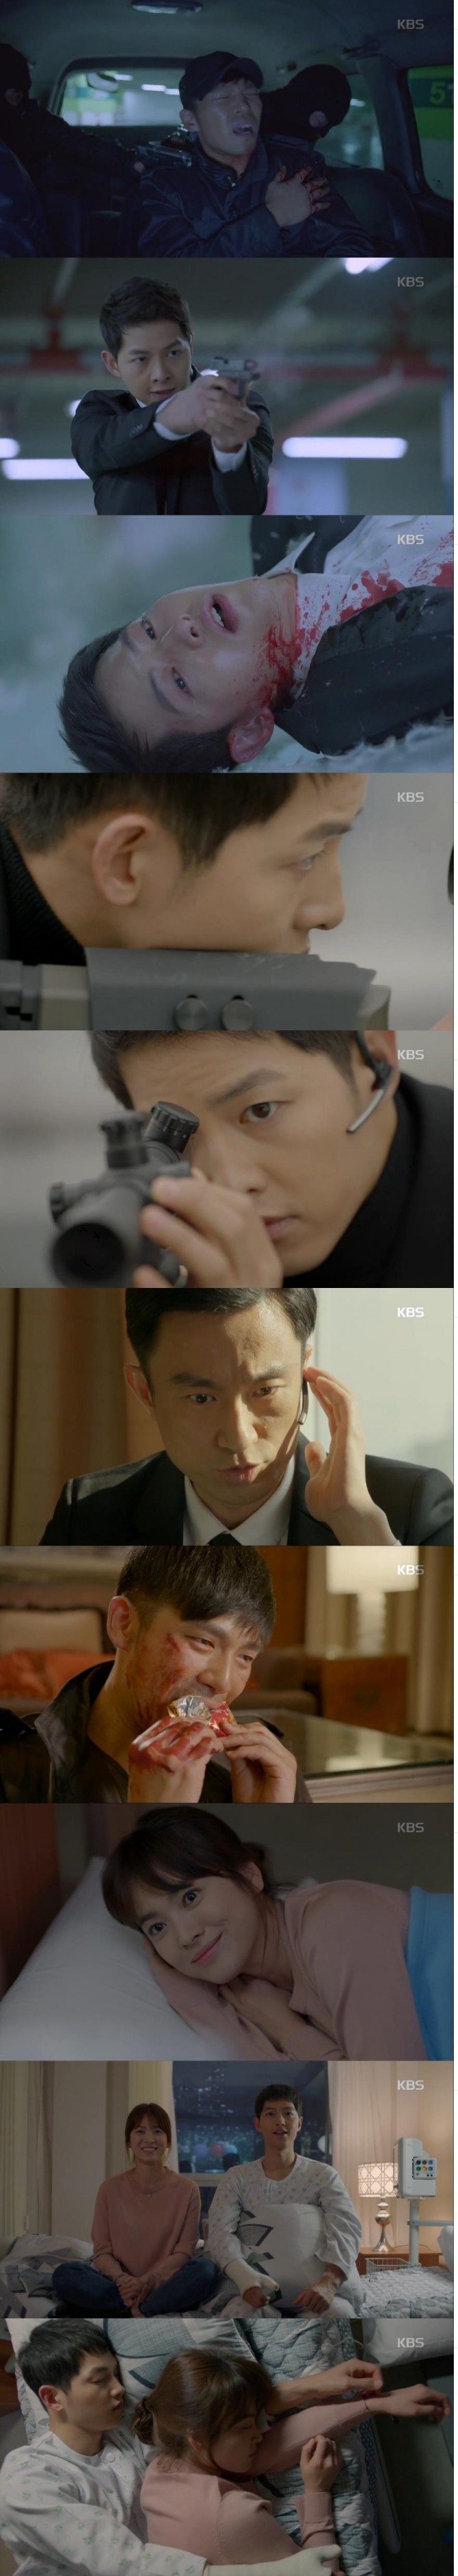 7일밤 방송된 KBS2 수목극 '태양의 후예'에서 유시진(송중기)은 북한군 안정준(지승현) 상위를 구하려다 총상을 입었고, 그를 보호하며 남북고위급 회담을 성사시키는 임무를 마쳤다./사진=KBS 방송 캡처